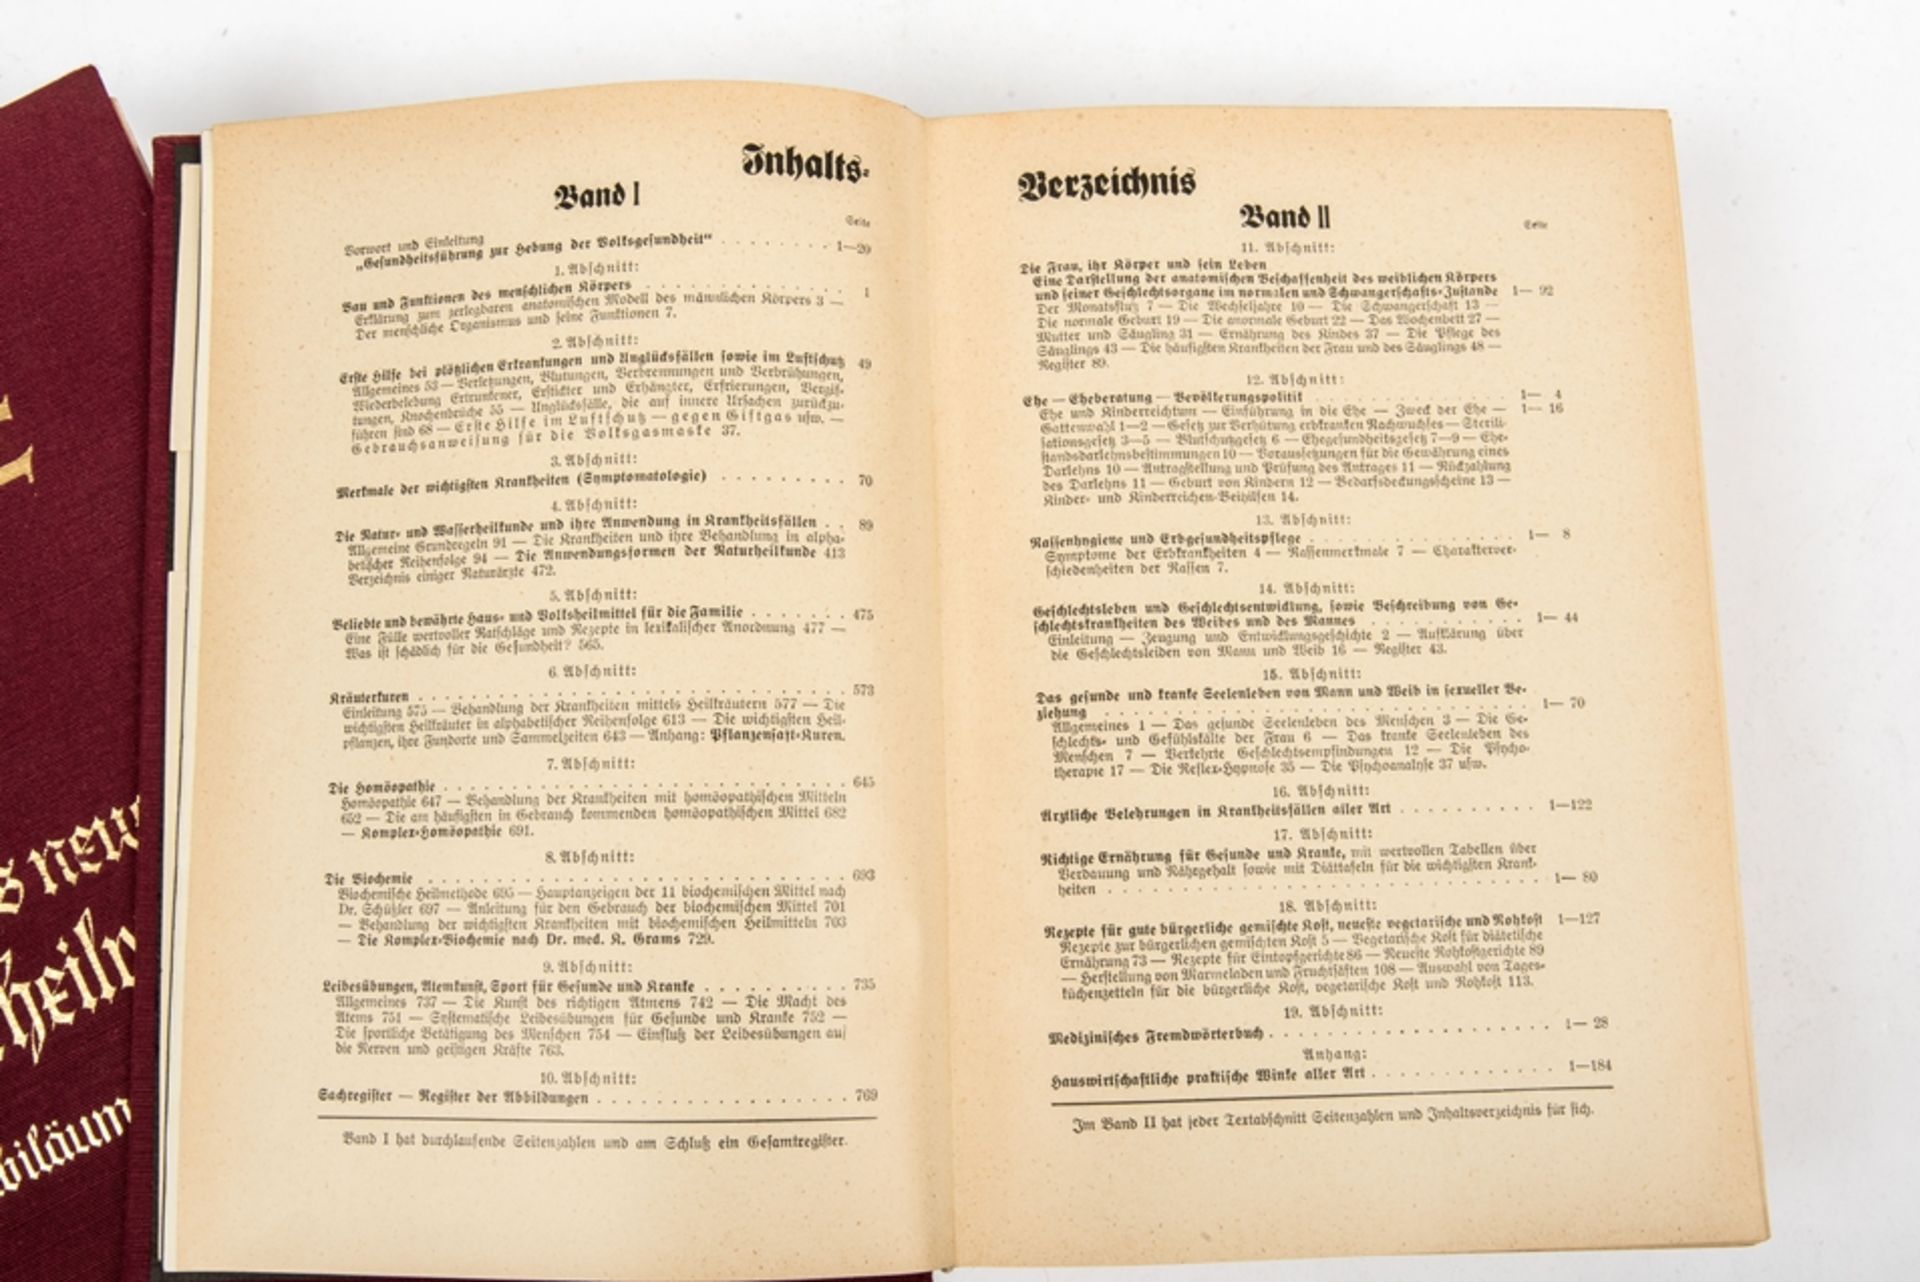 Bilz, Das neue Naturheilverfahren, Jubiläumsausgabe 1938 - Image 4 of 5